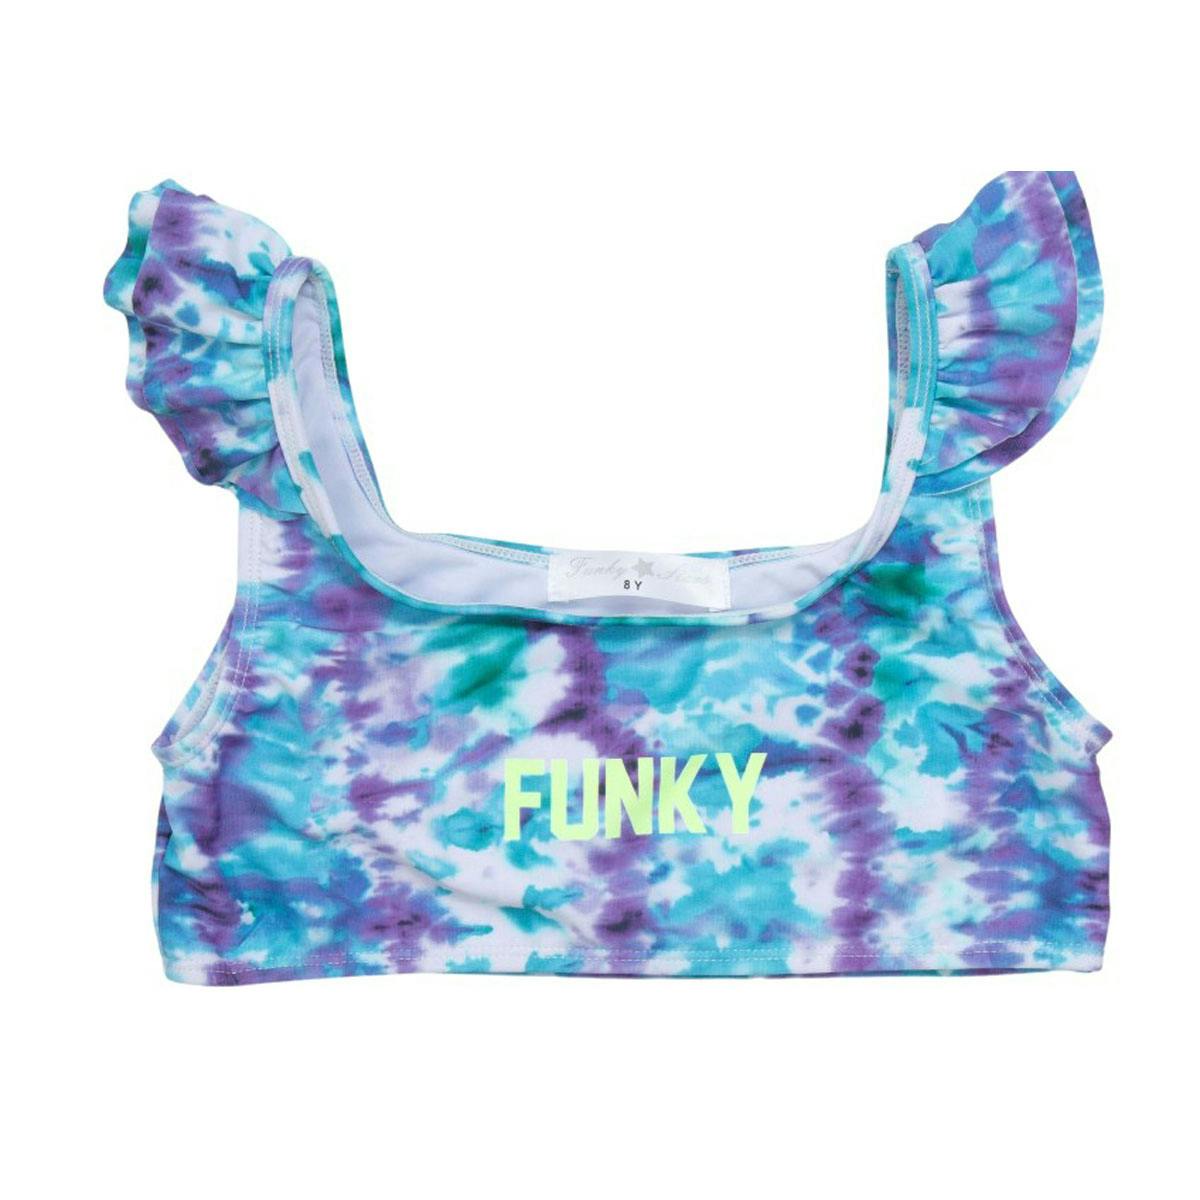 FUNKY - Funky Παιδικό Μαγιό Tie Dye